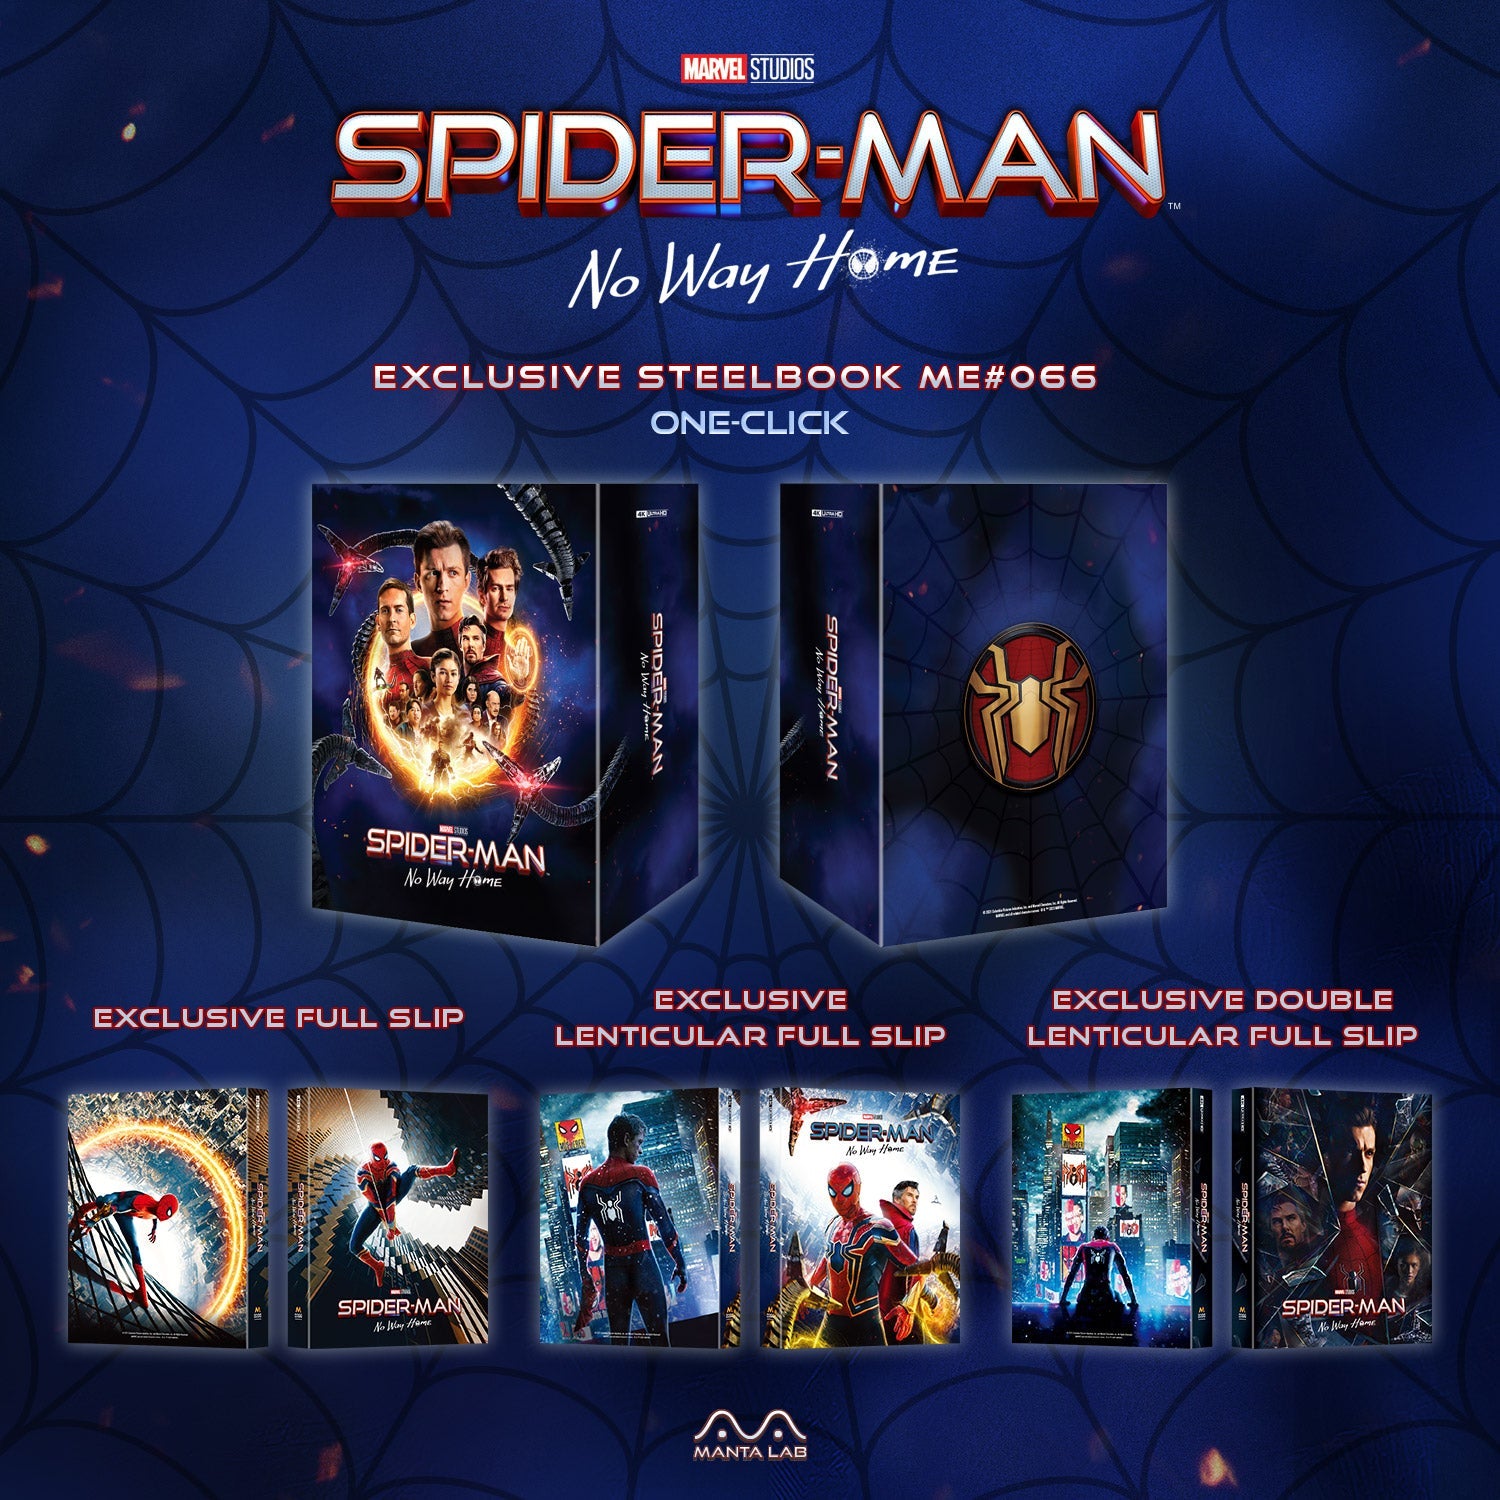 Spider-Man: No Way Home 4K Blu-ray Steelbook Manta Lab Exclusive ME#66